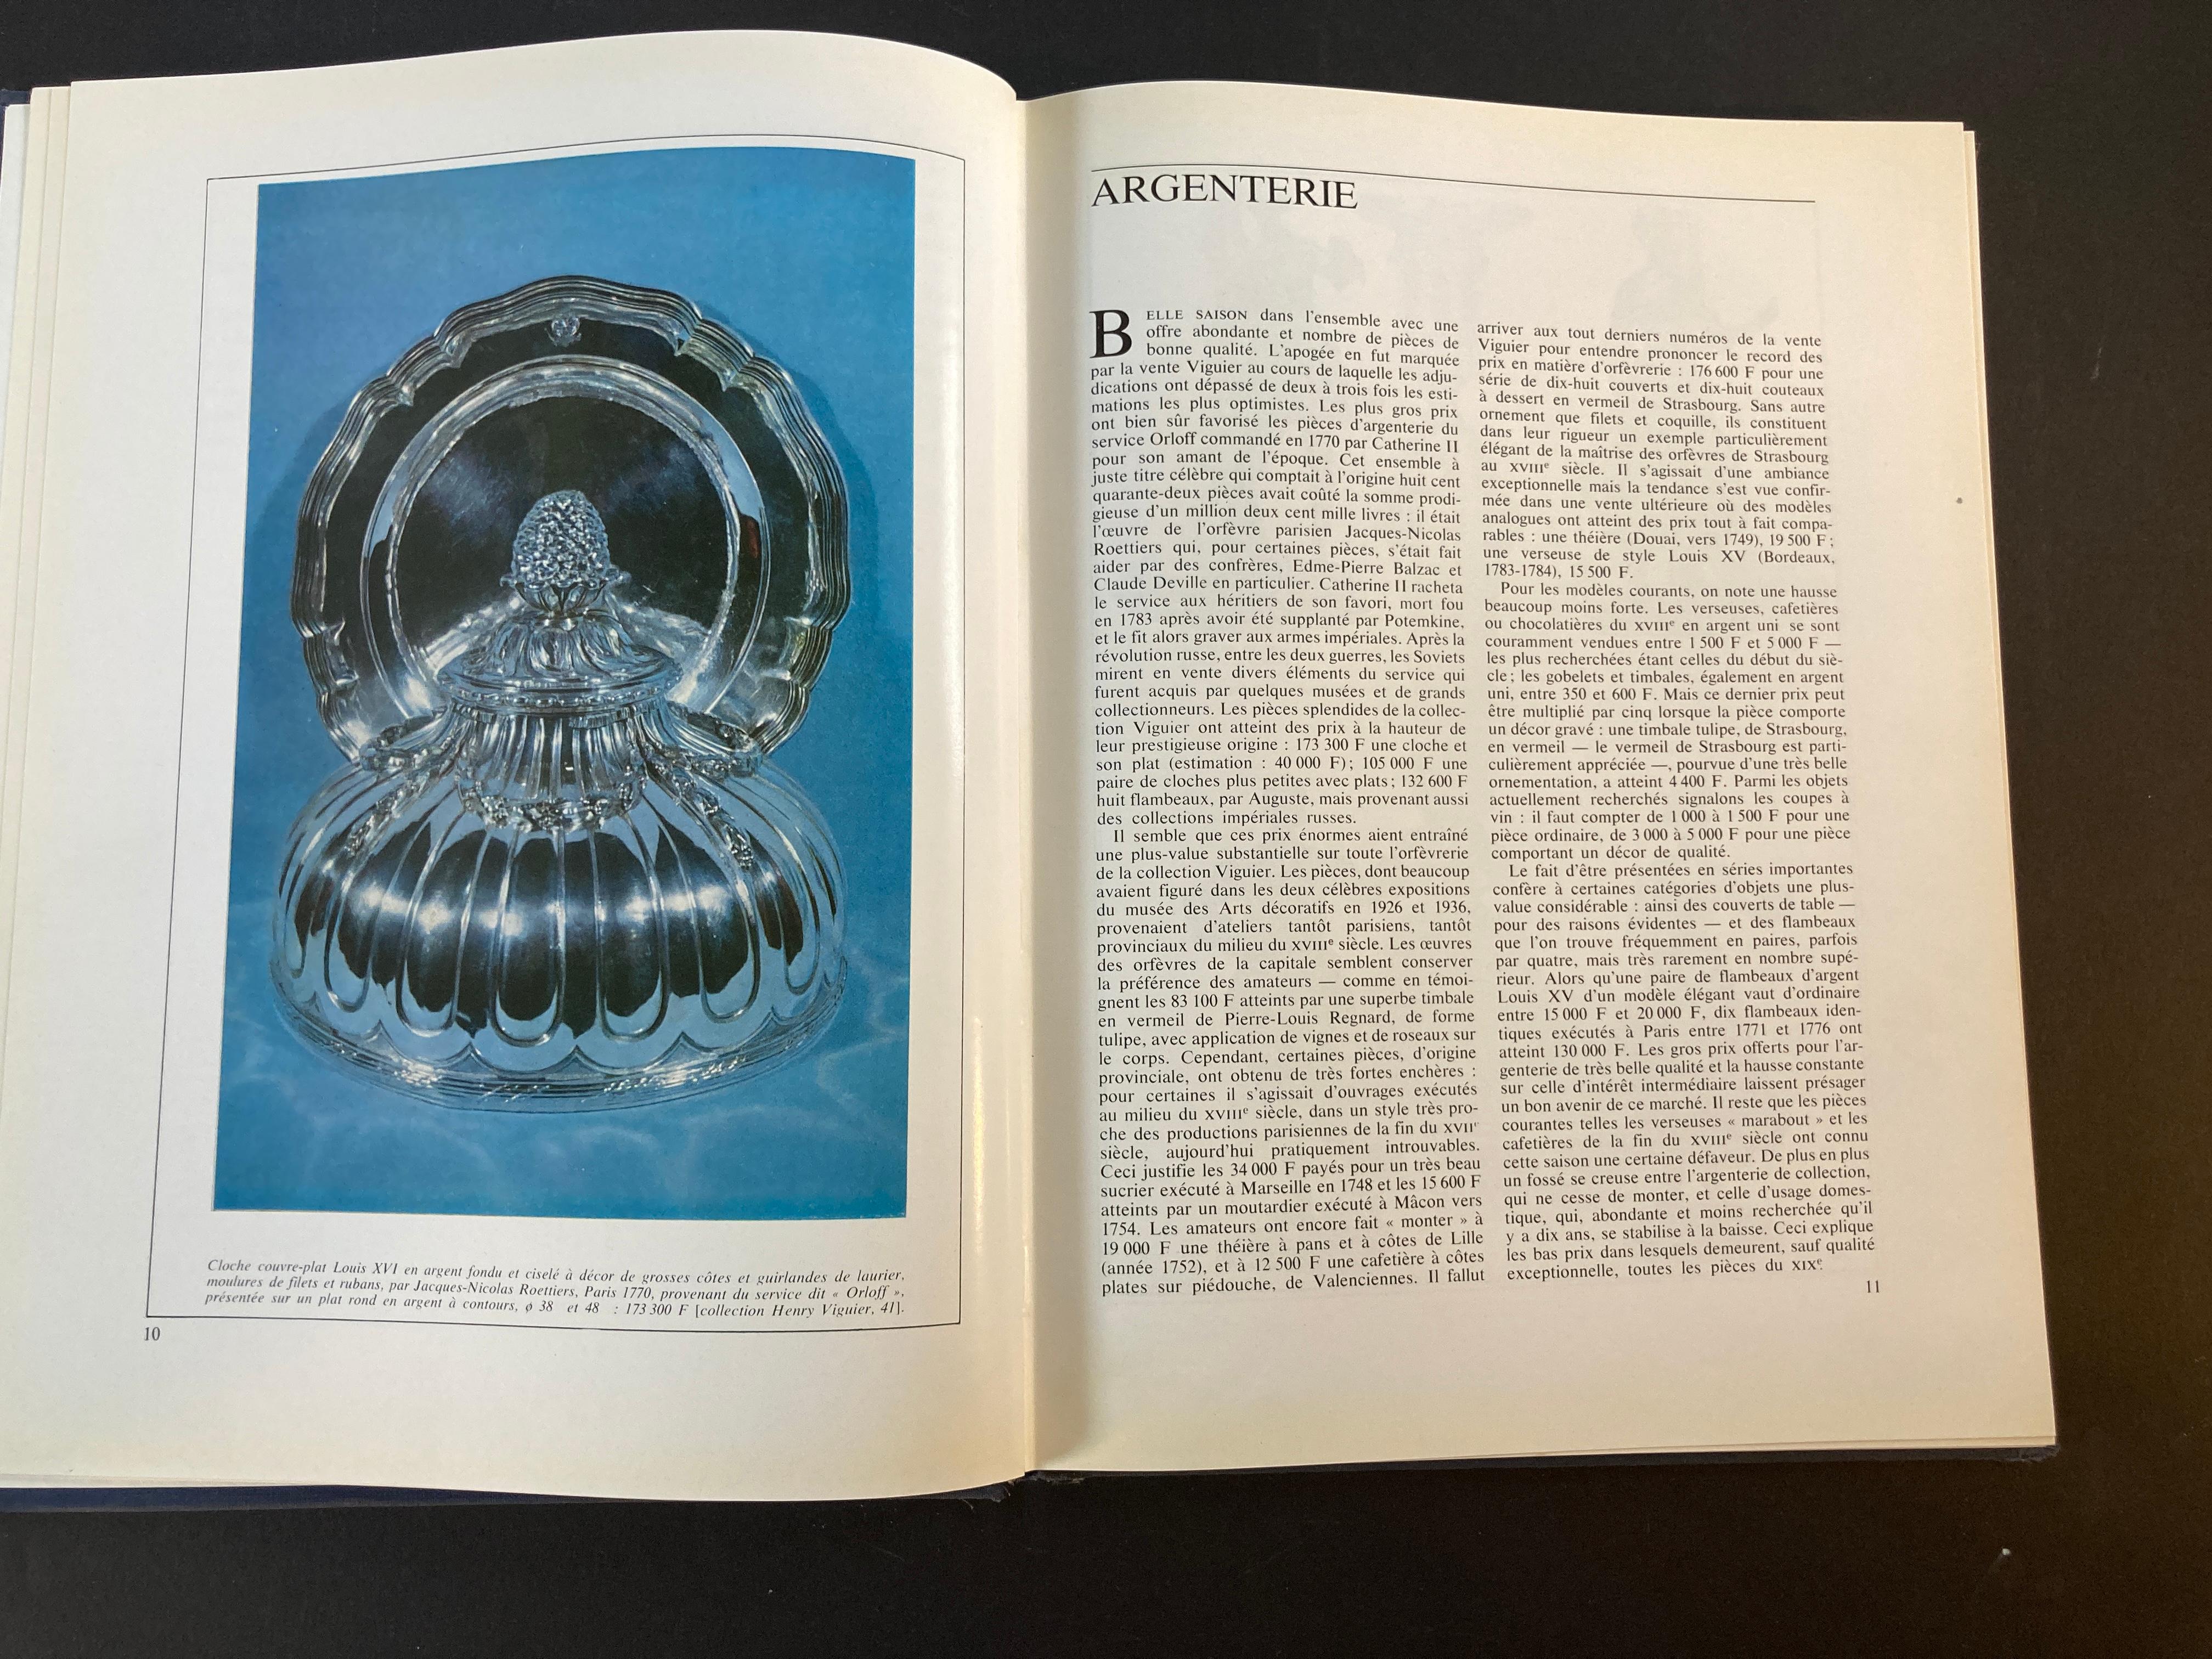 French Annuaire connaissance des arts 1968 des ventes publiques en France Hardcover For Sale